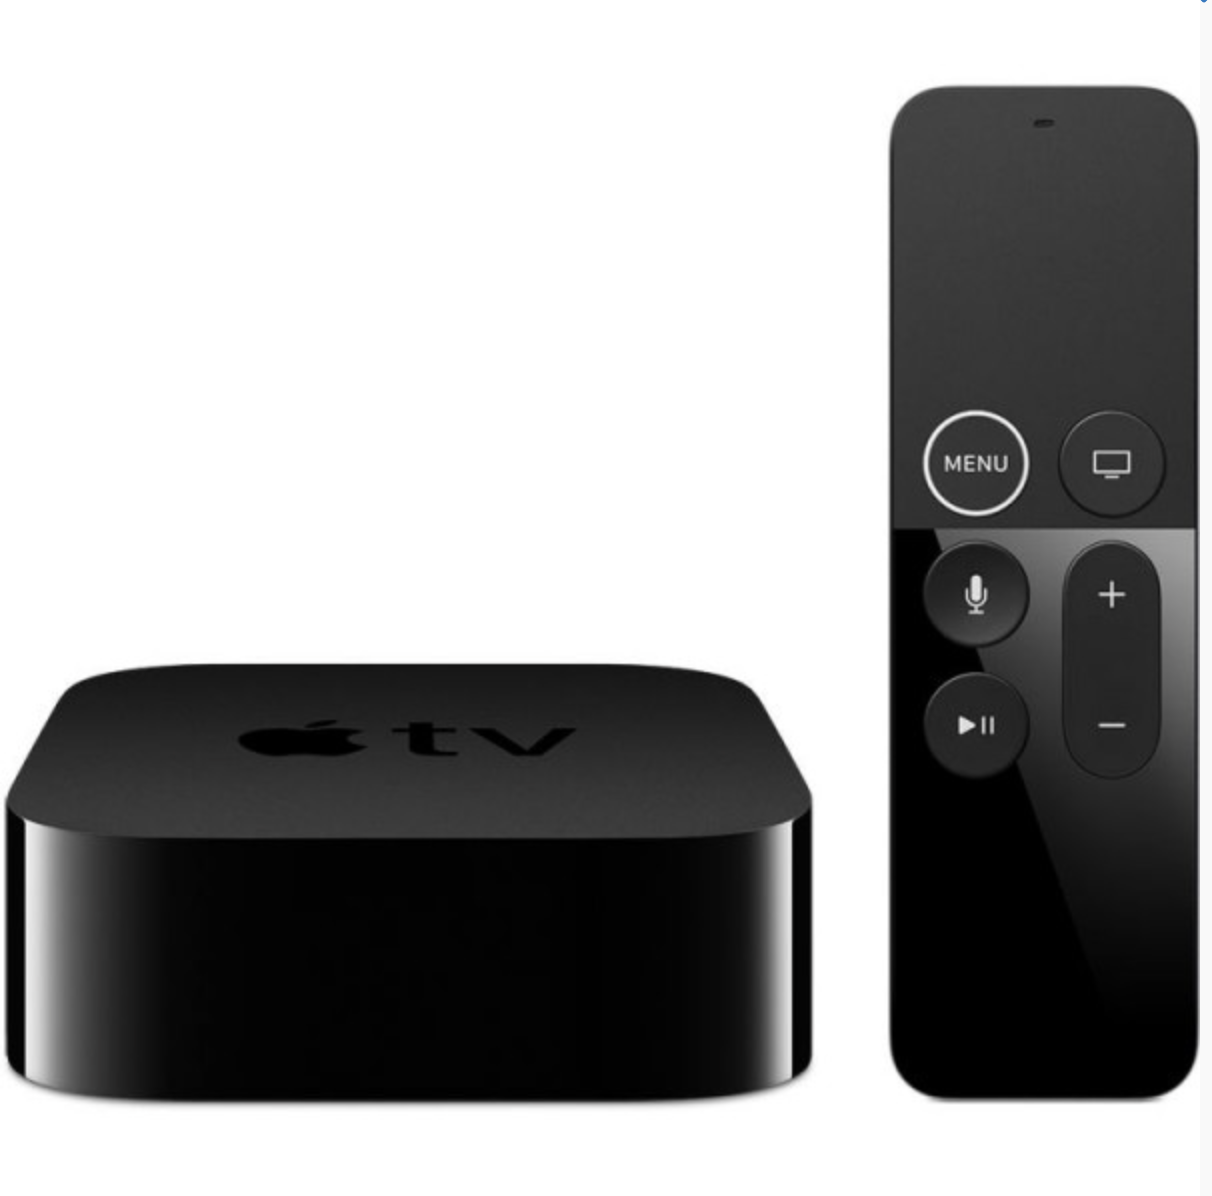 Apple TV ed accessori nuovi in Offerta su Amazon